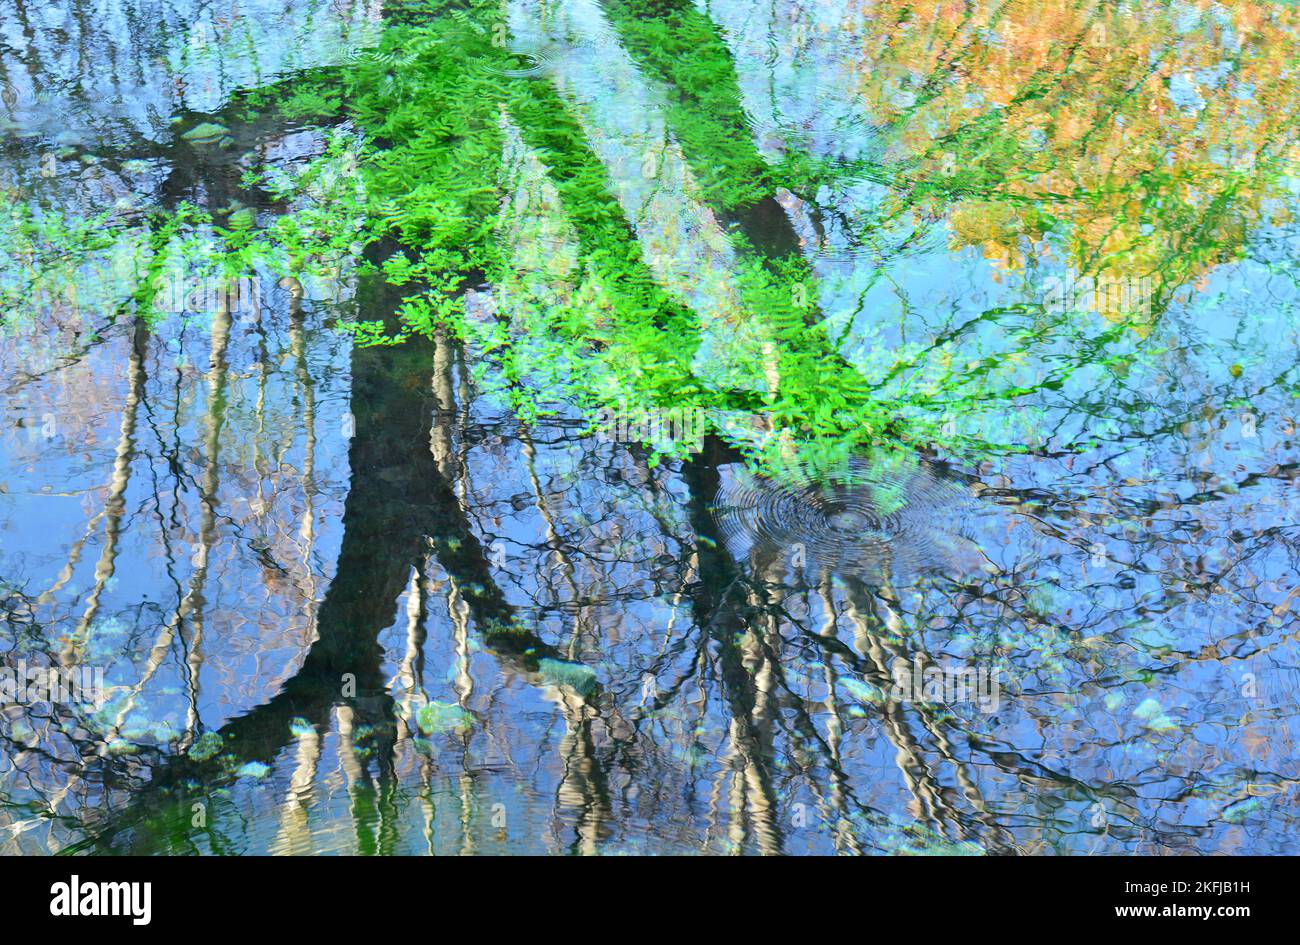 Reflejos de plantas y árboles en el agua de un estanque, acuarela natural Stock Photo